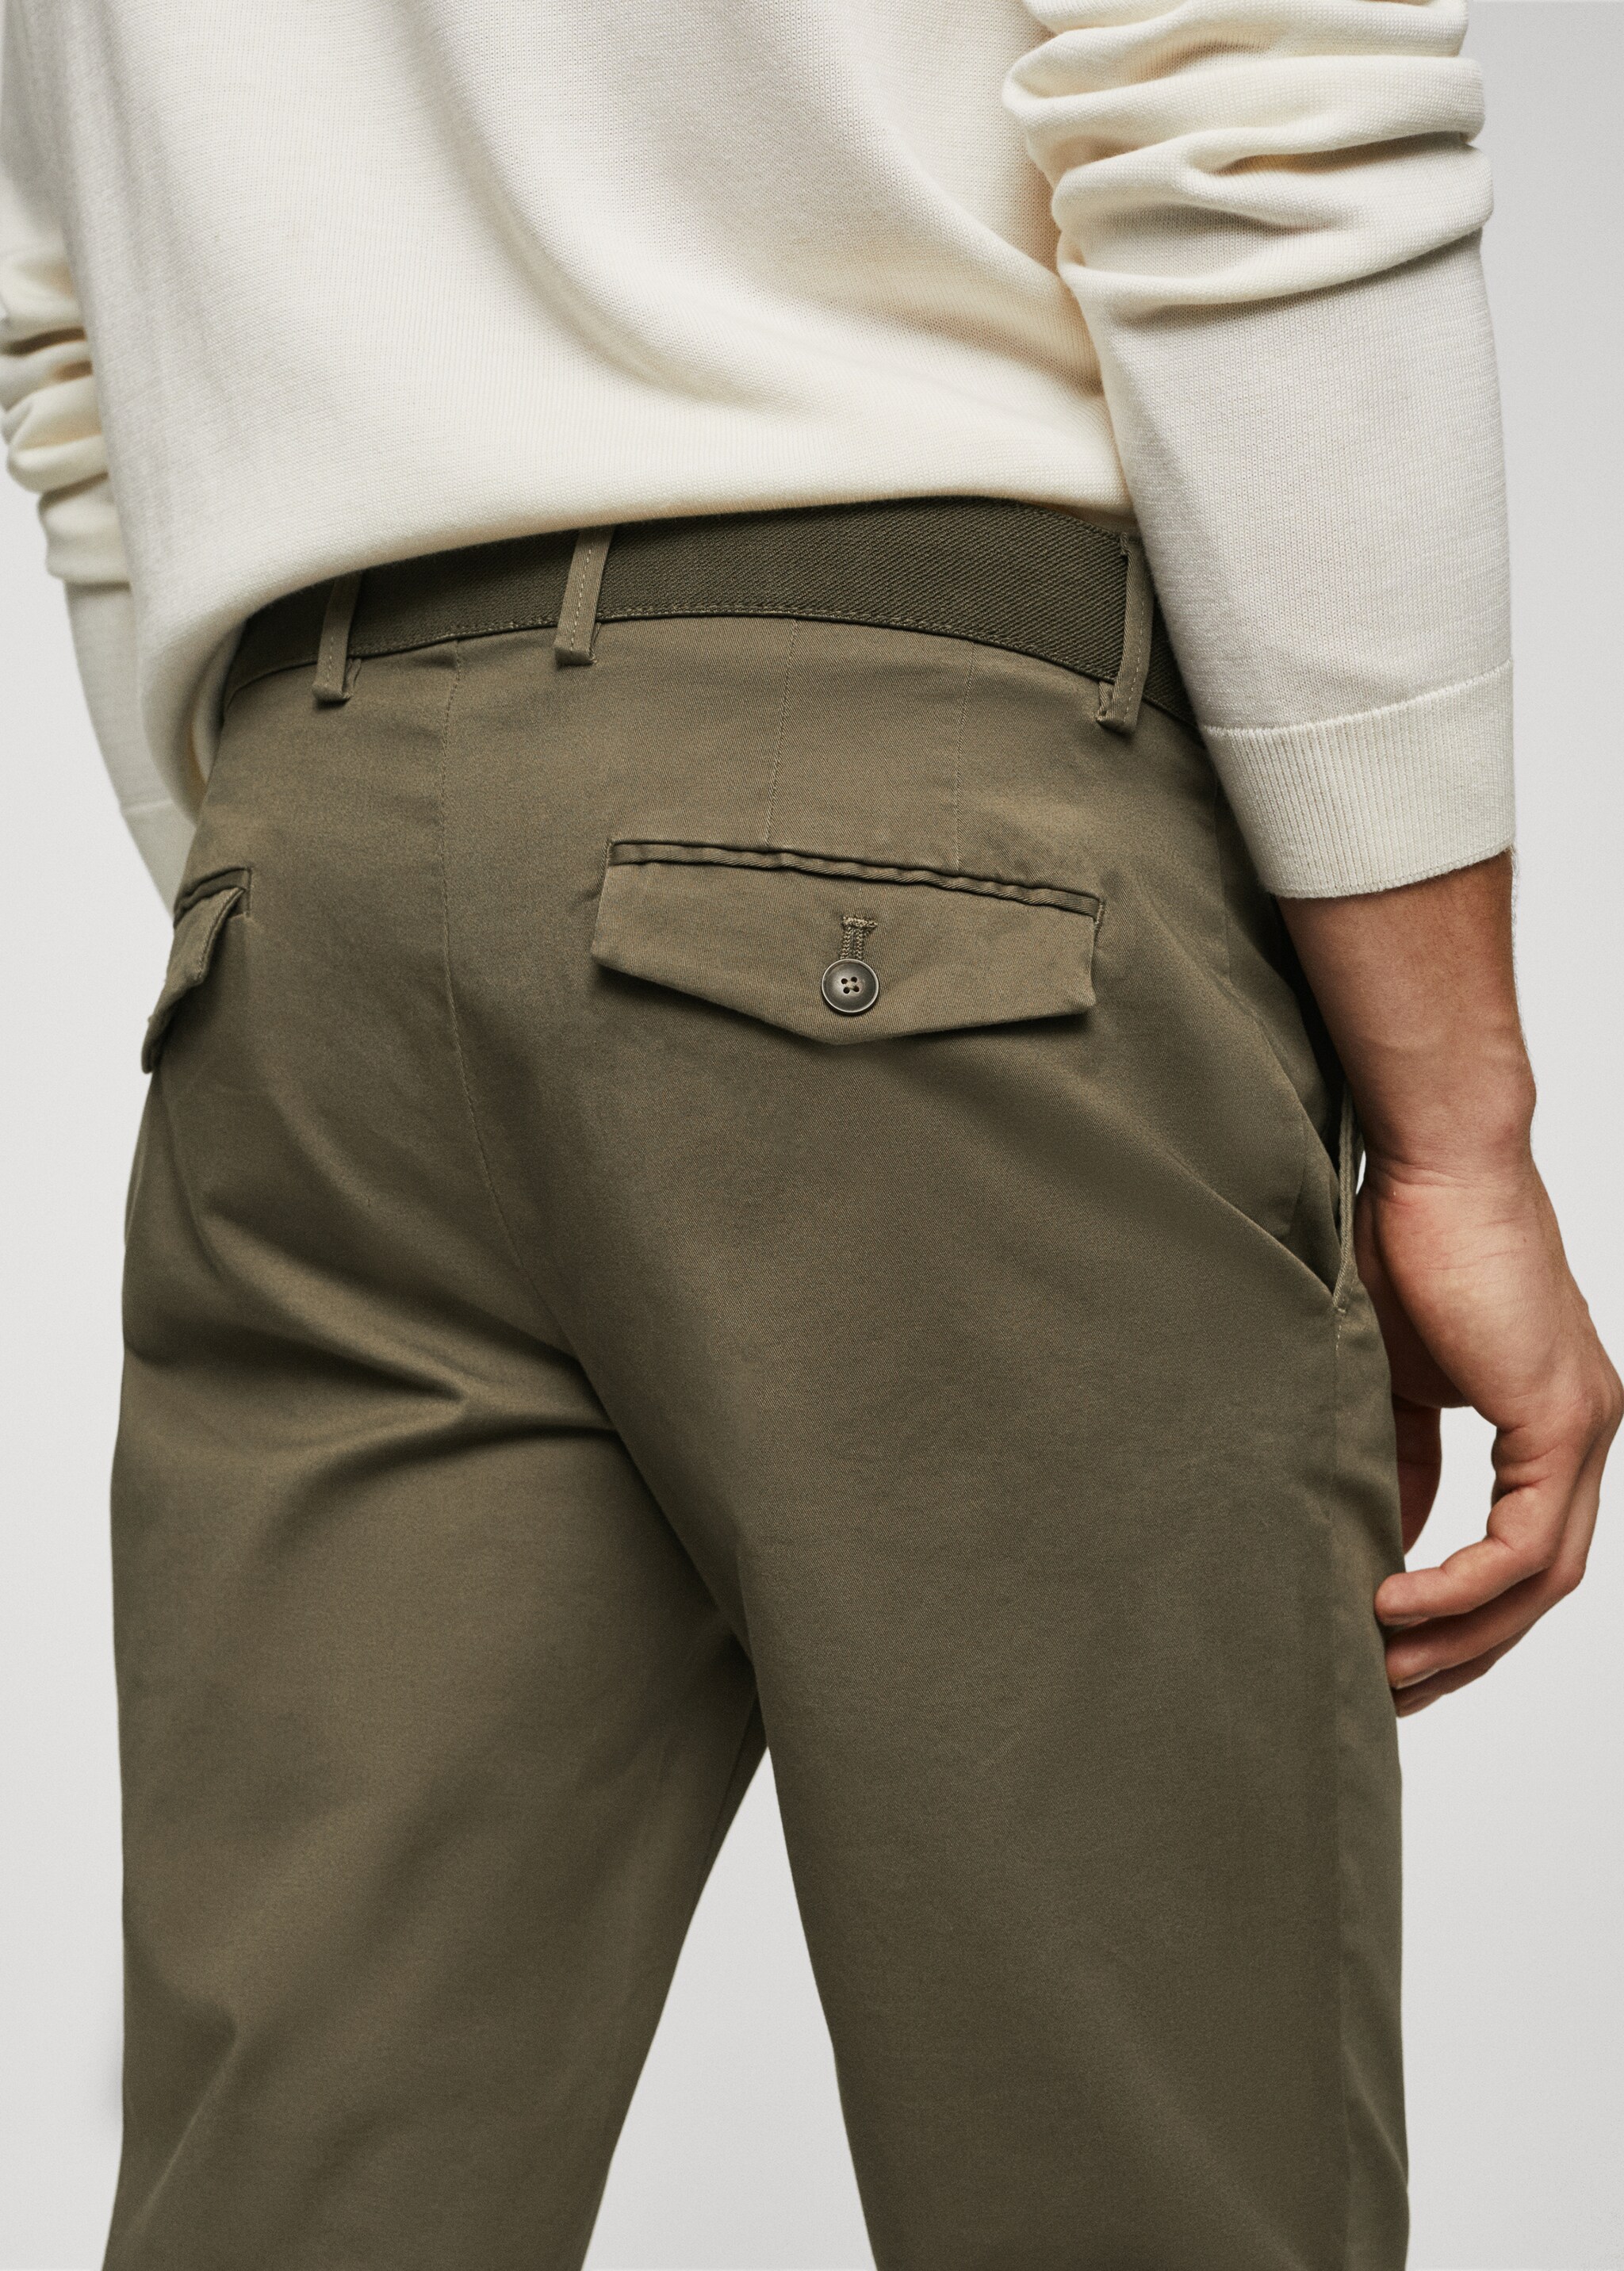 Tapered kesim pamuklu cropped pantolon - Ürün detayı 2